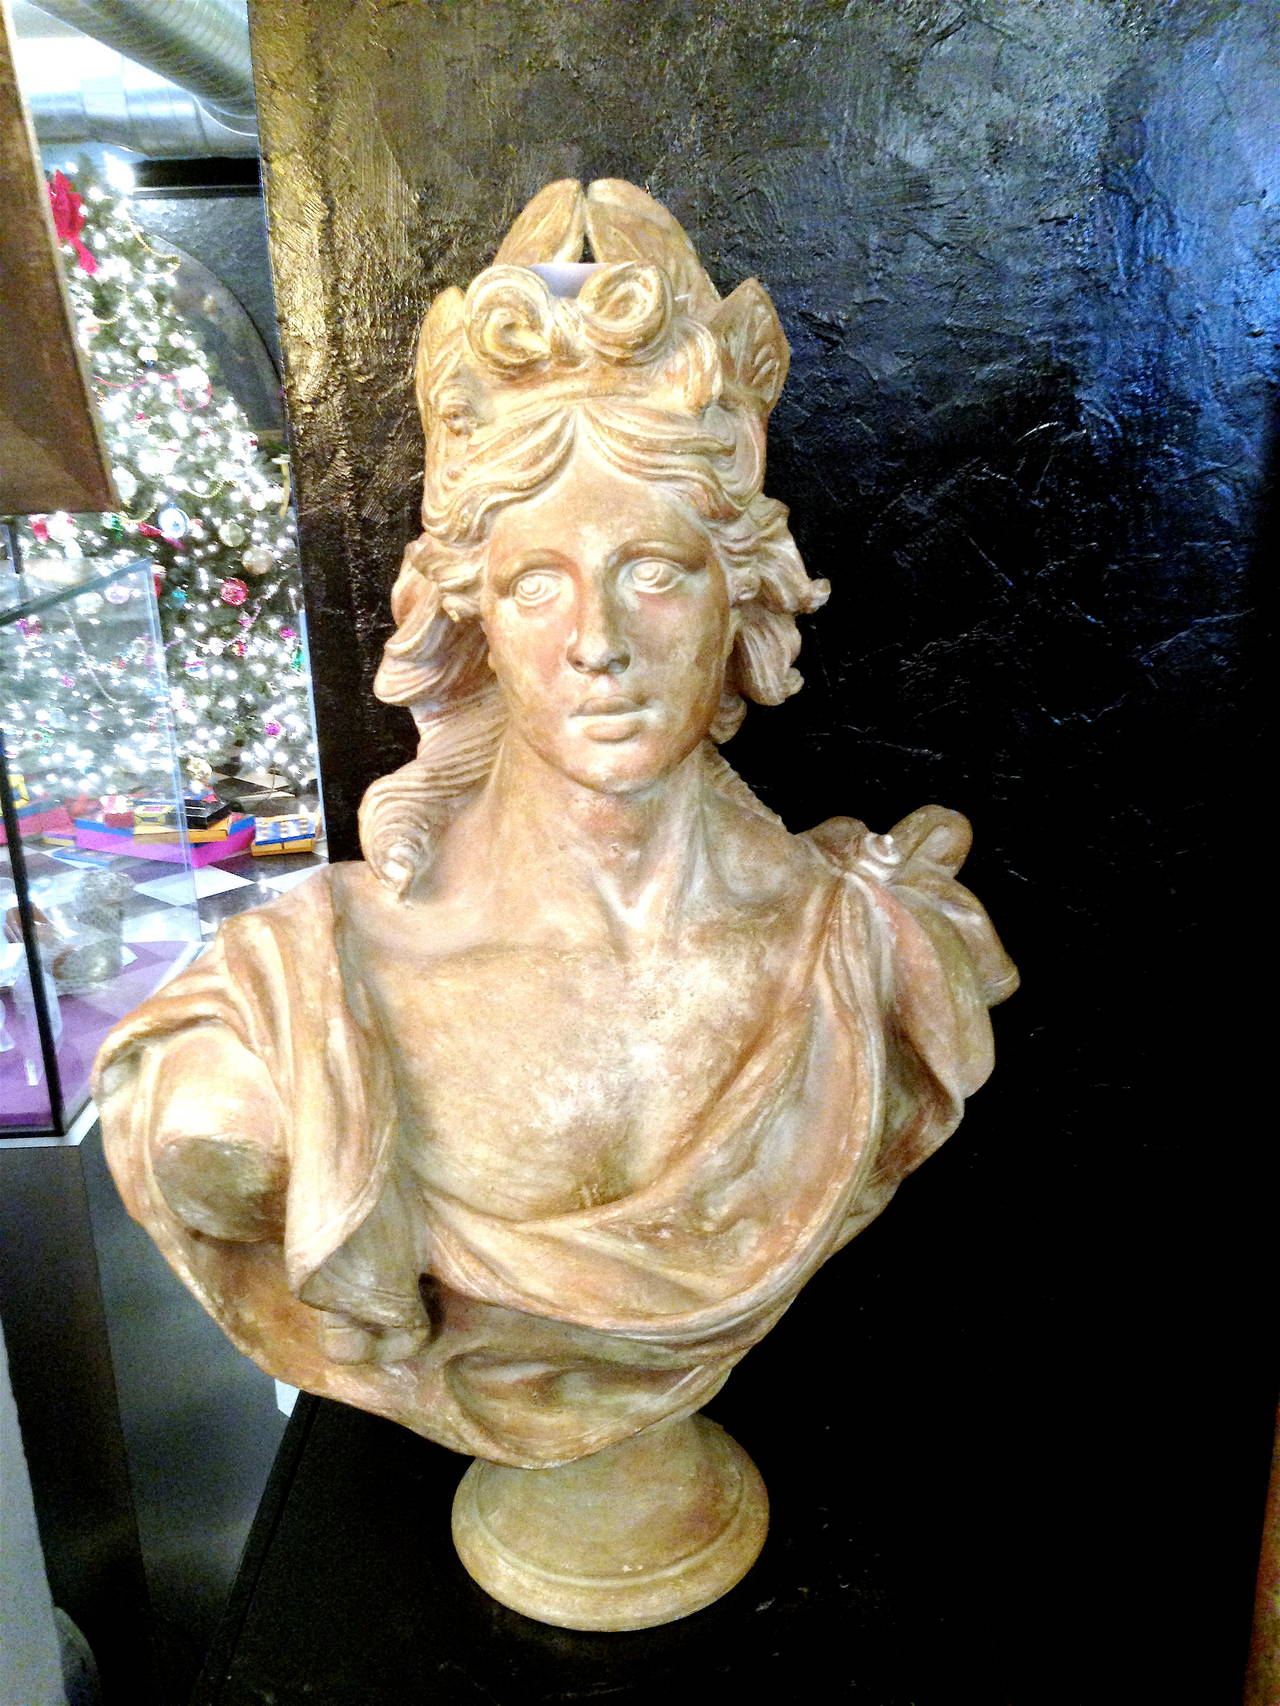 Buste continental majestueux en terre cuite représentant un buste féminin classique.  
Représentant un buste féminin classique avec des feuilles de laurier autour de la tête, le second étant une femme. Très belle apparence avec une belle patine. 